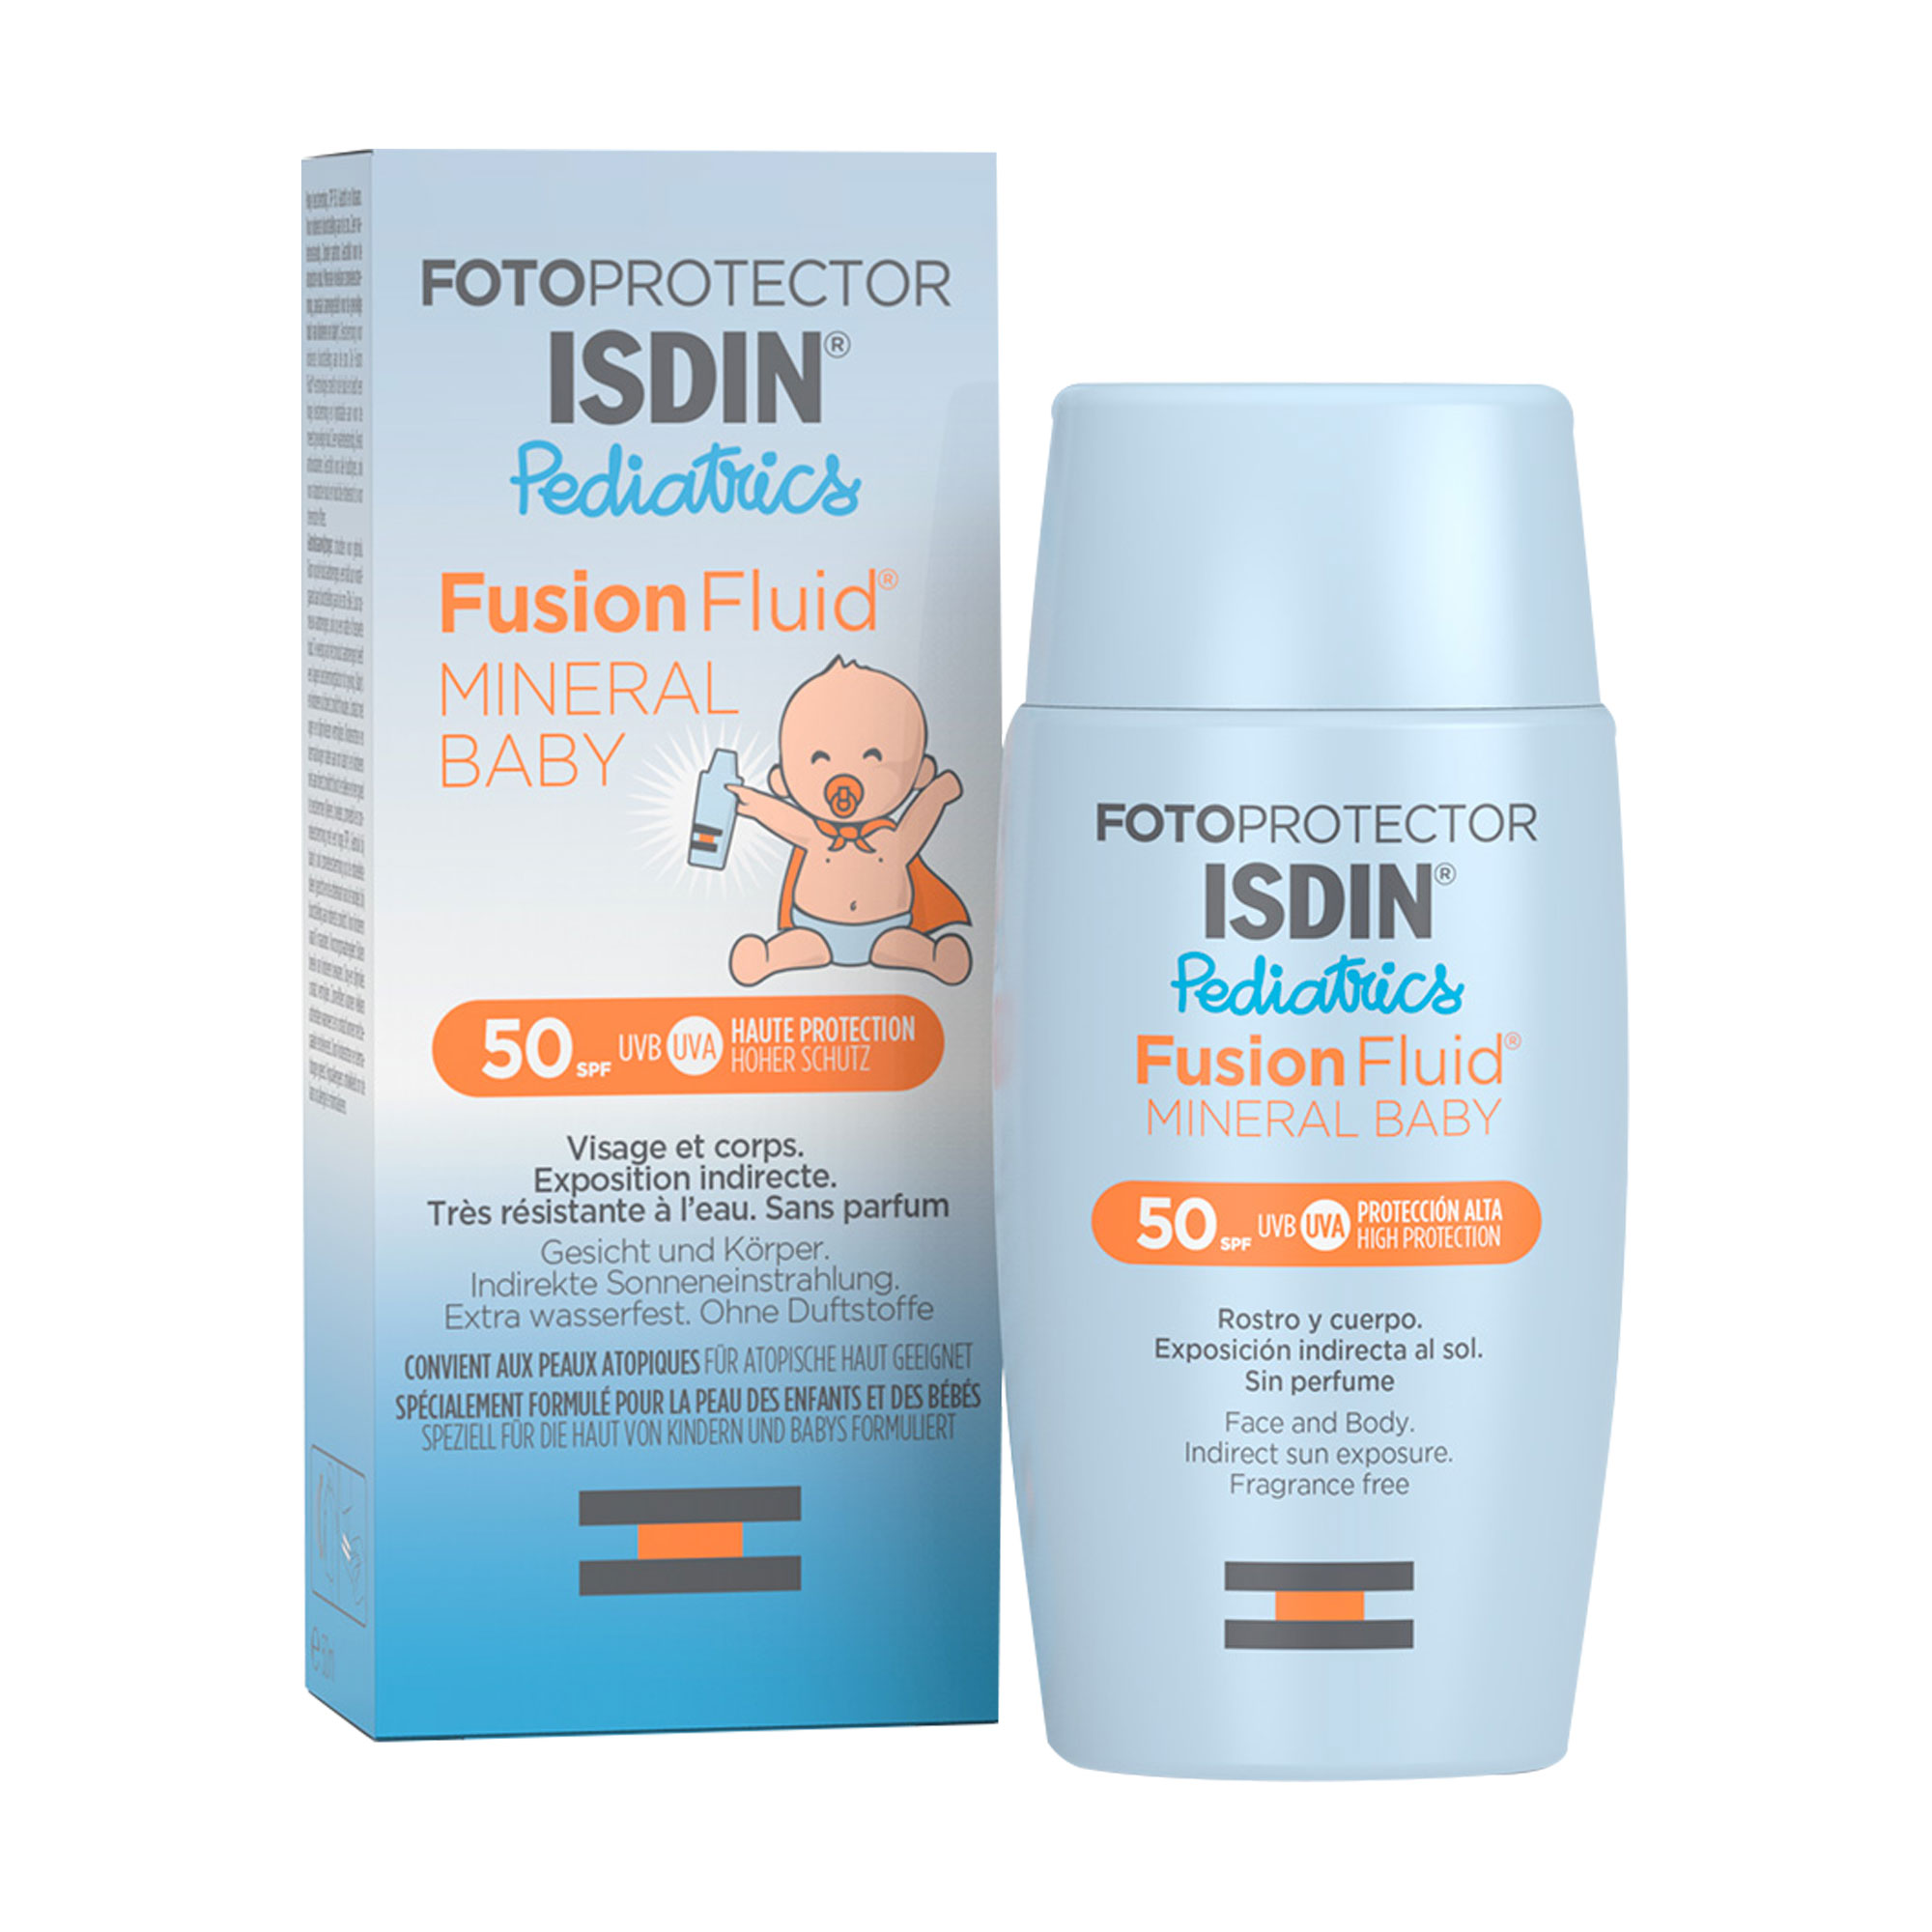 Flüssiger Sonnenschutz mit mineralischen Filtern speziell für die empfindliche Haut von Babys. Geeignet ab 6 Monaten für Gesicht und Körper.